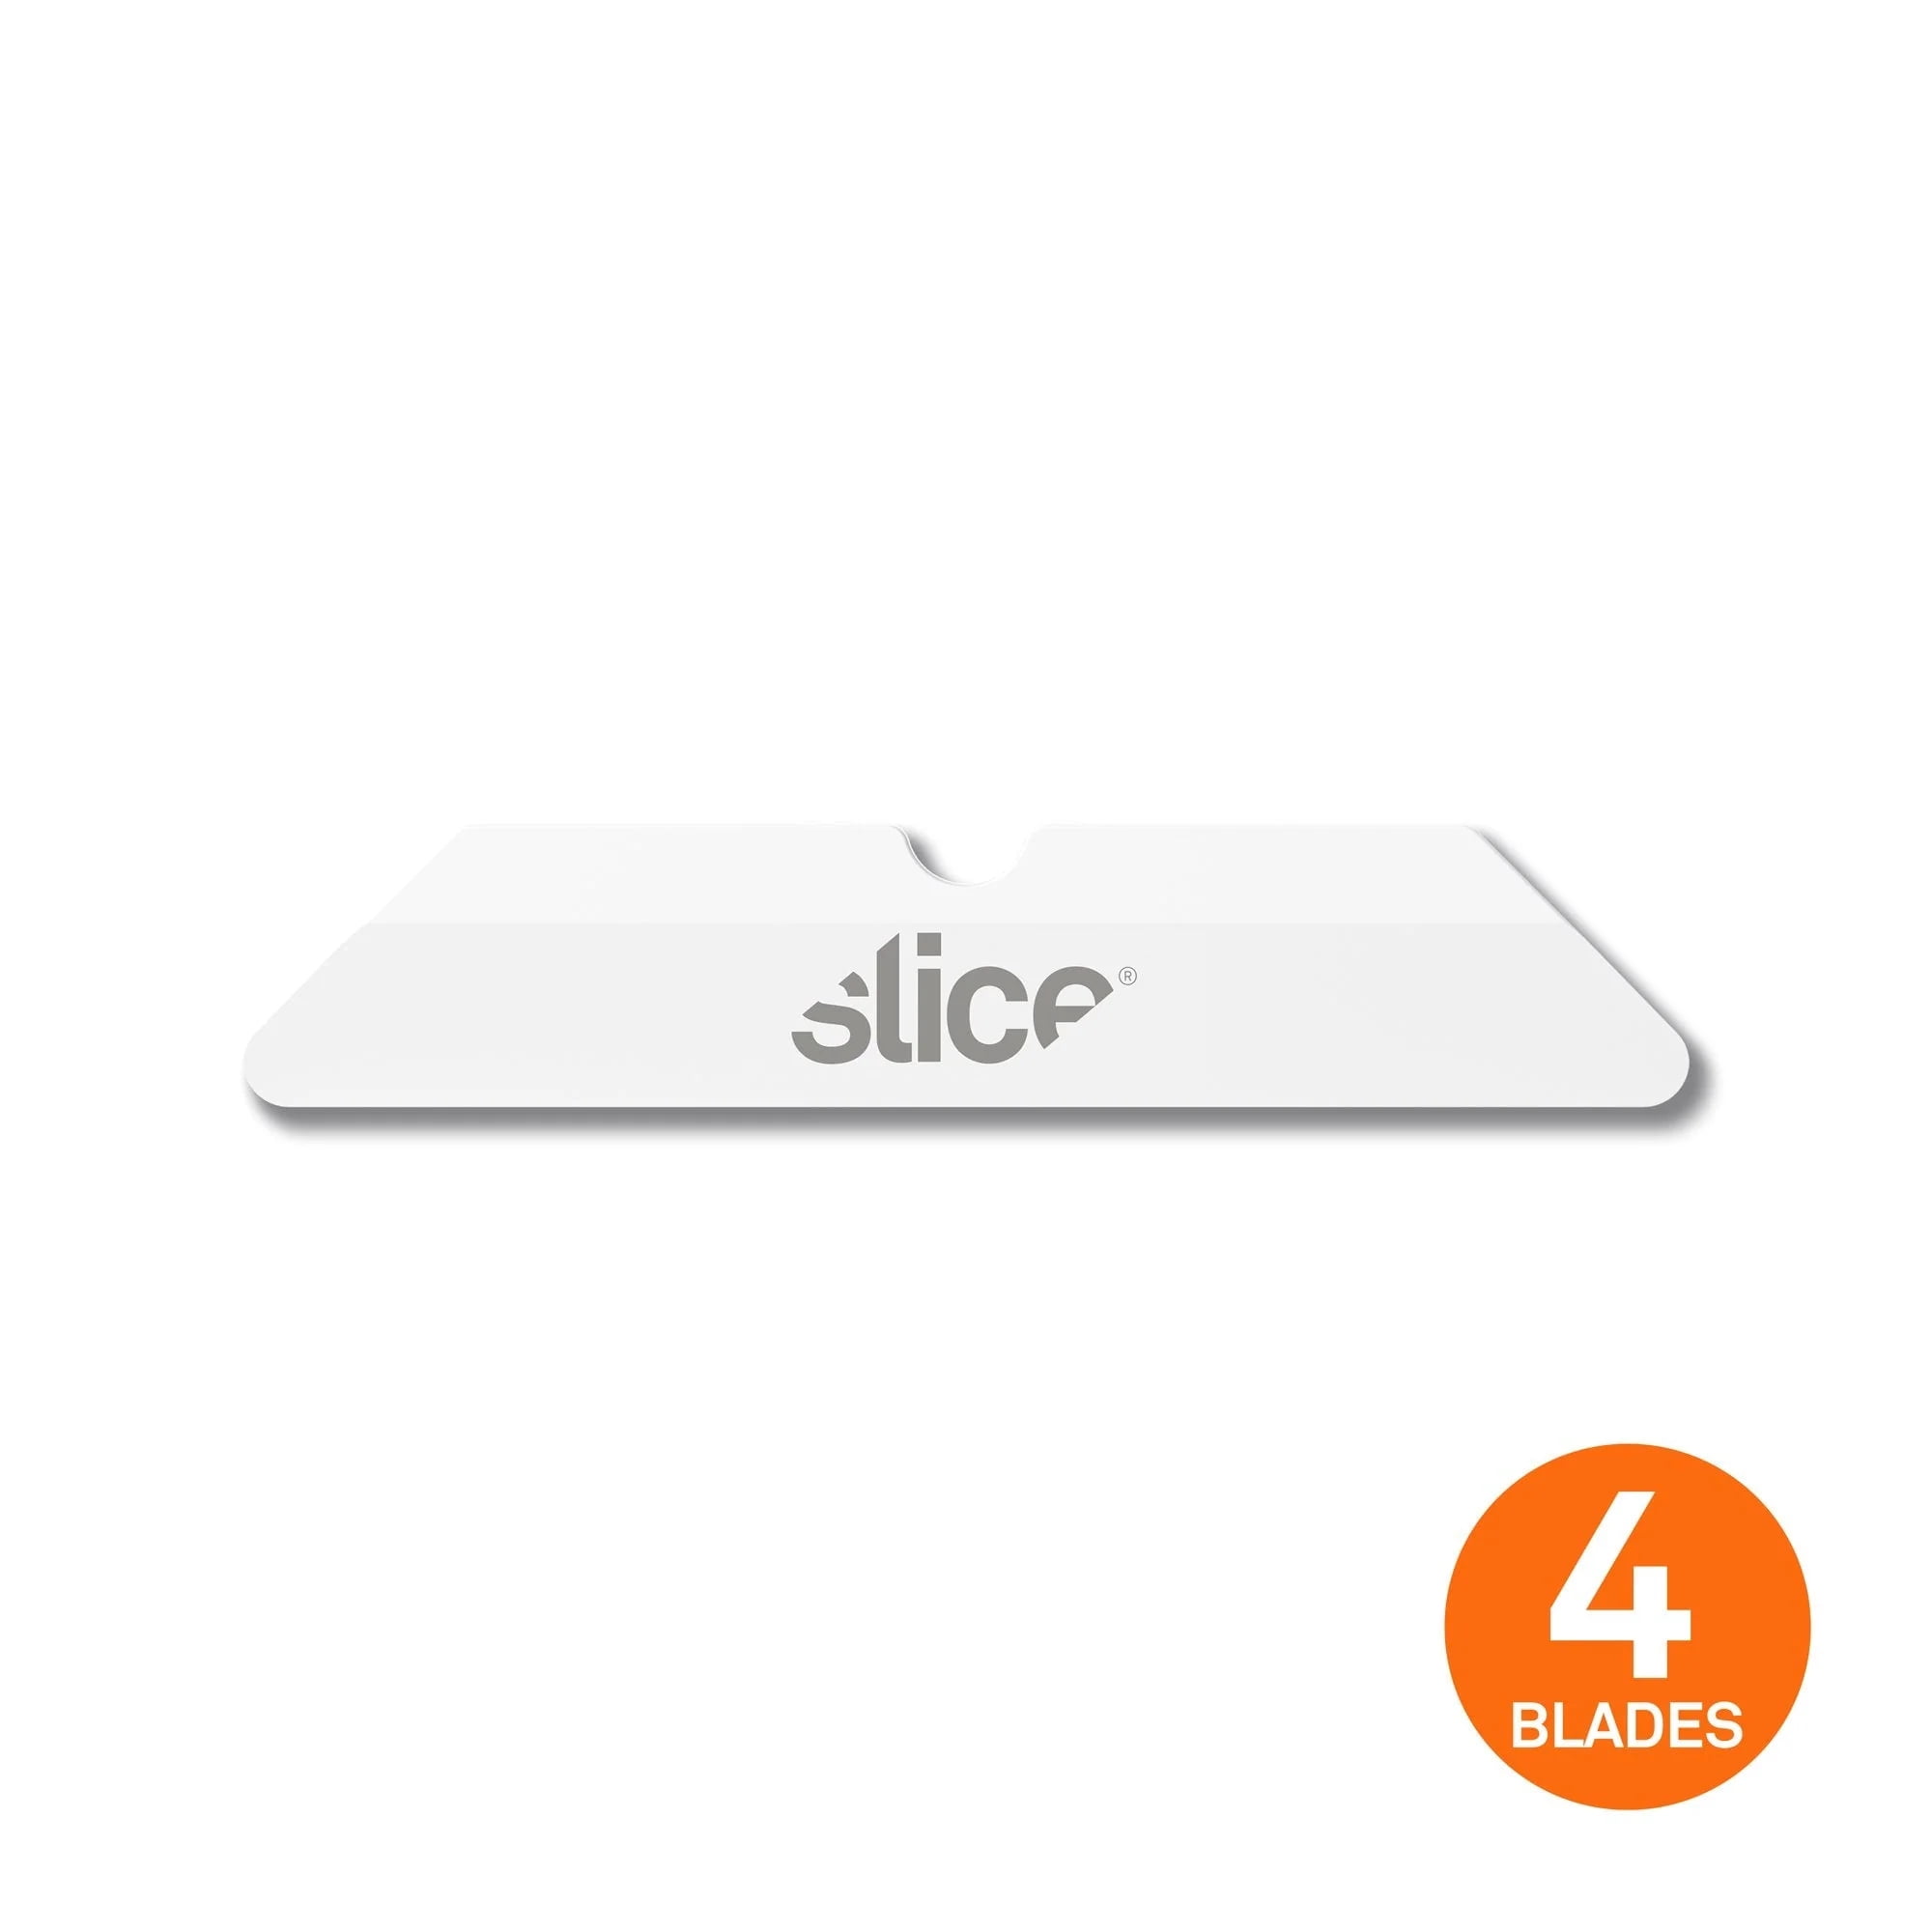 Slice, Inc.